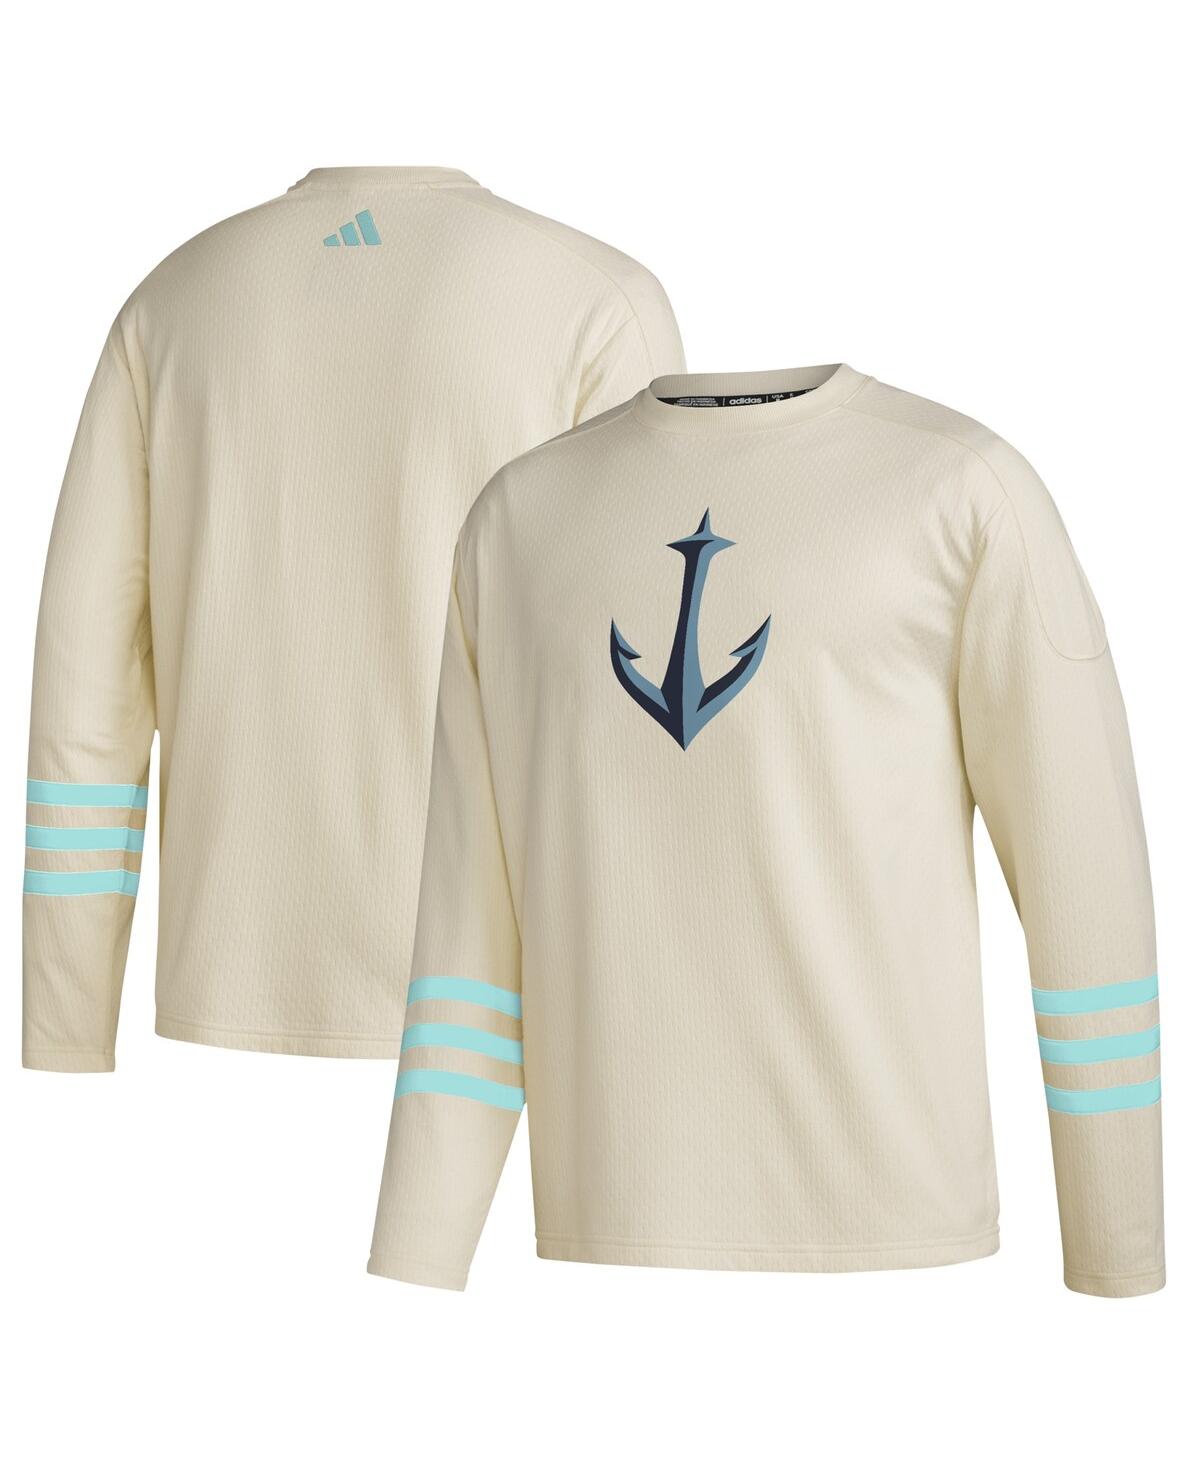 Men's adidas Khaki Seattle Kraken AeroreadyÂ Pullover Sweater - Khaki